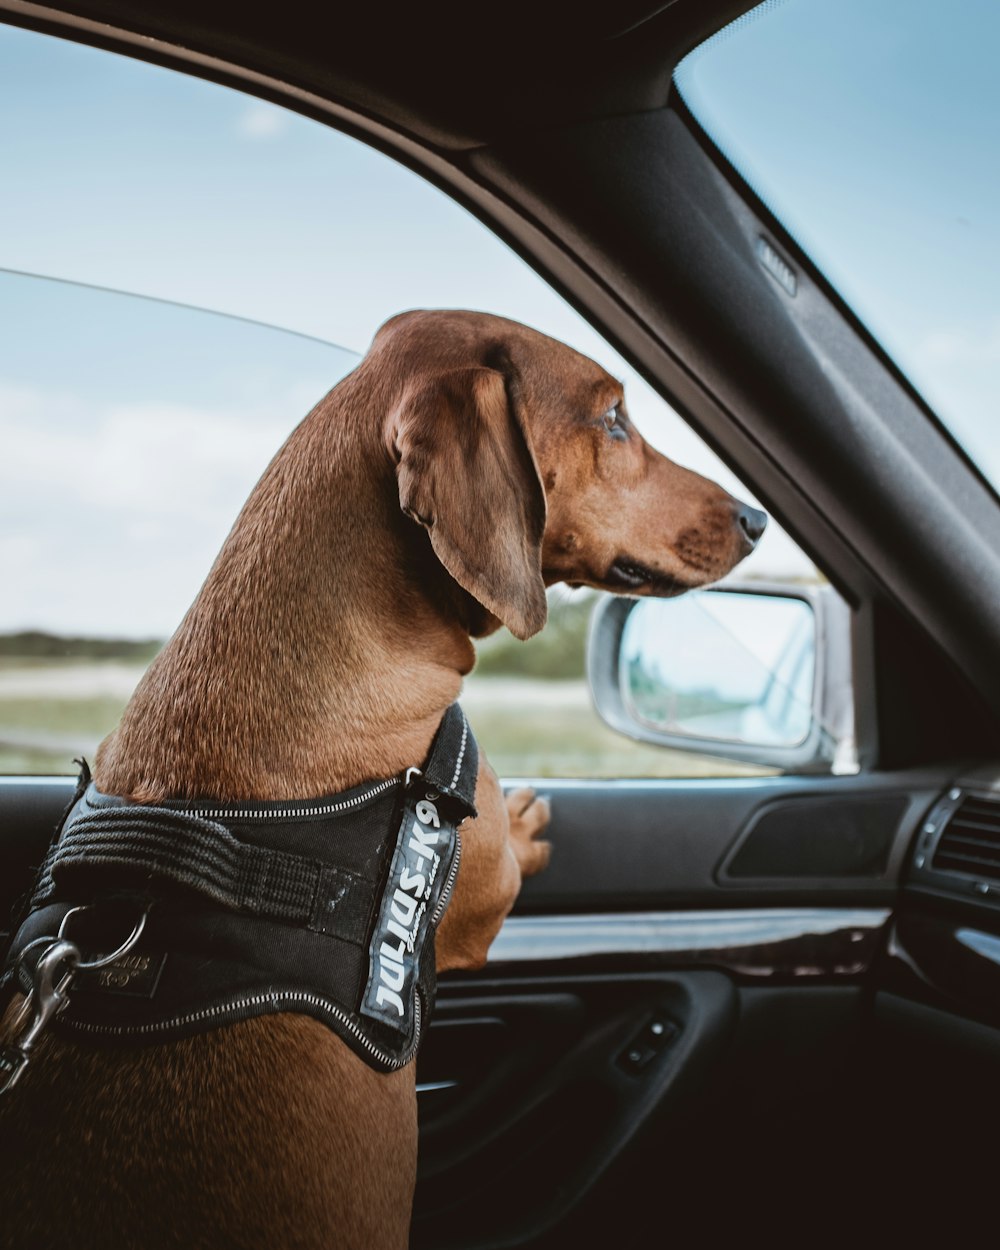 brow dog inside vehicle